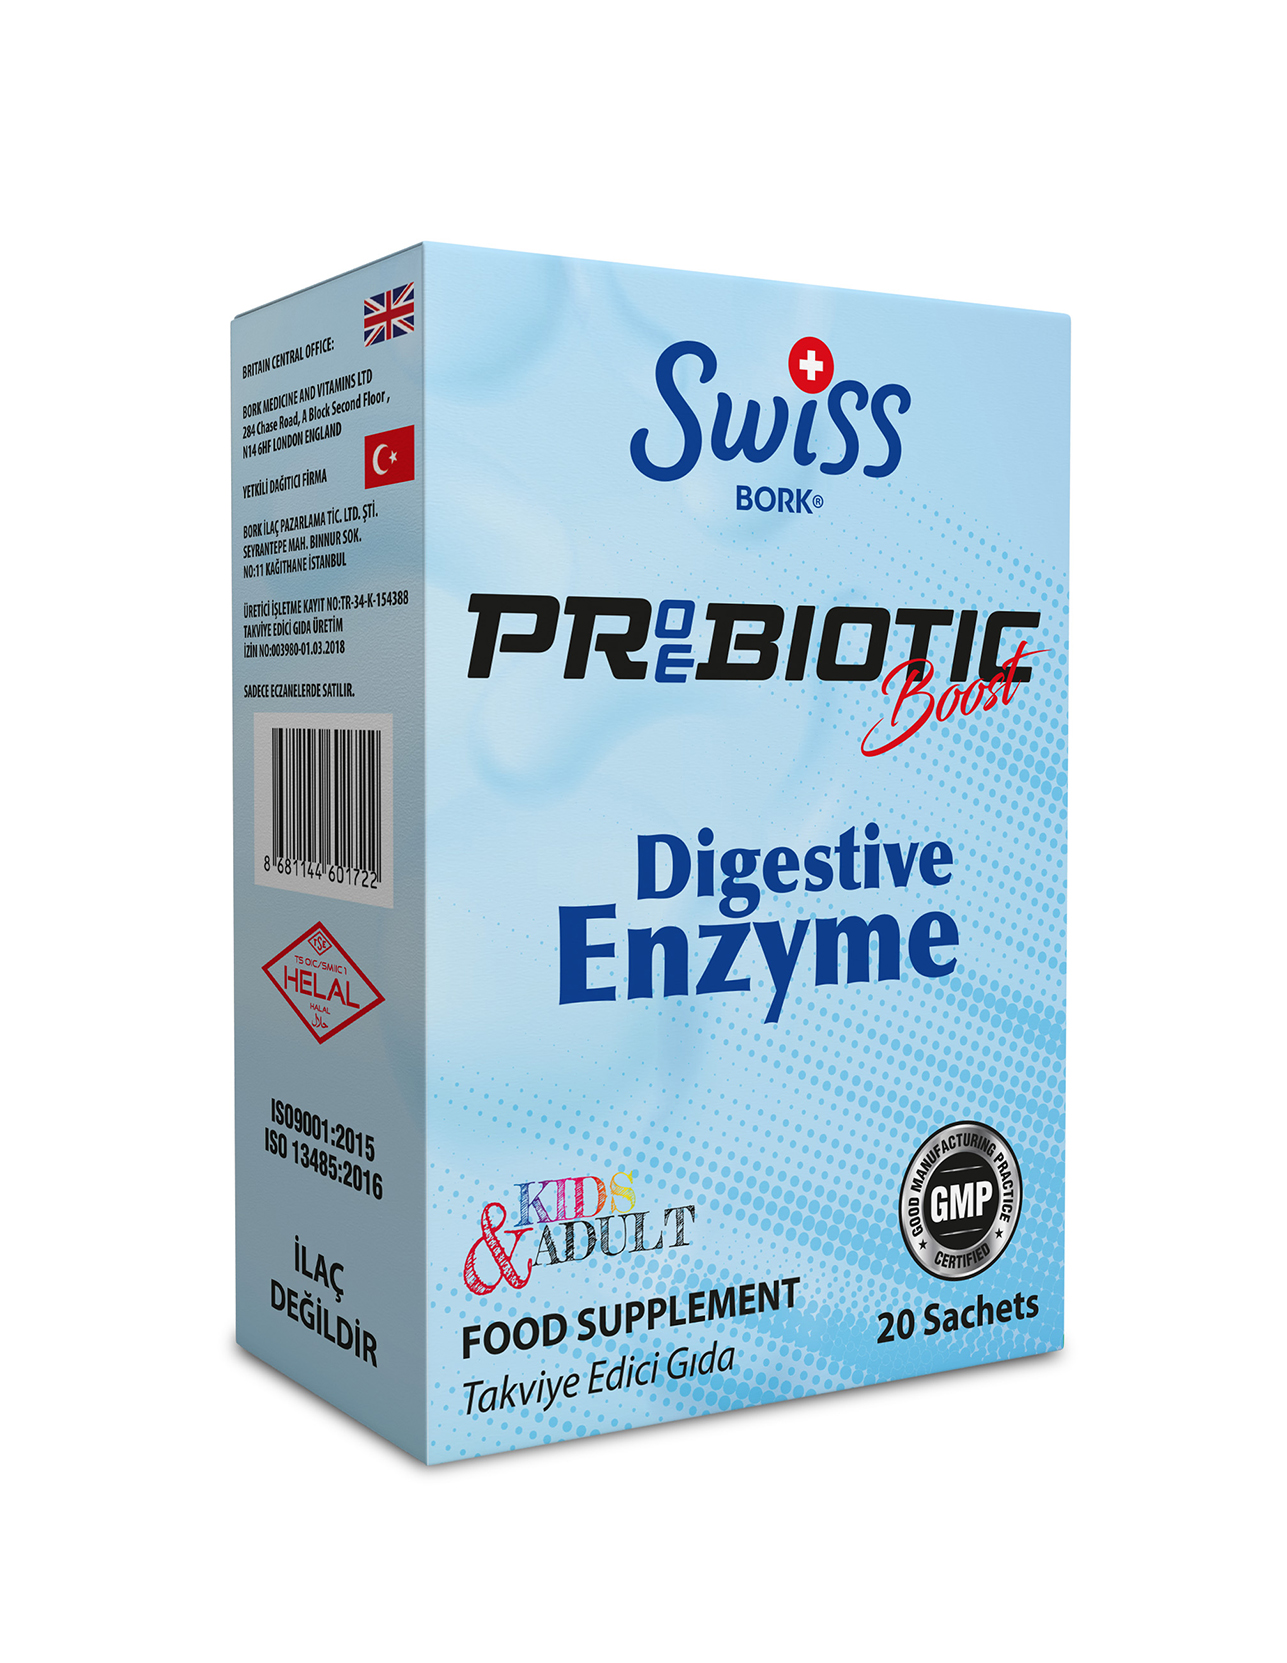 Proebiotic Boost Digestive Enzyme